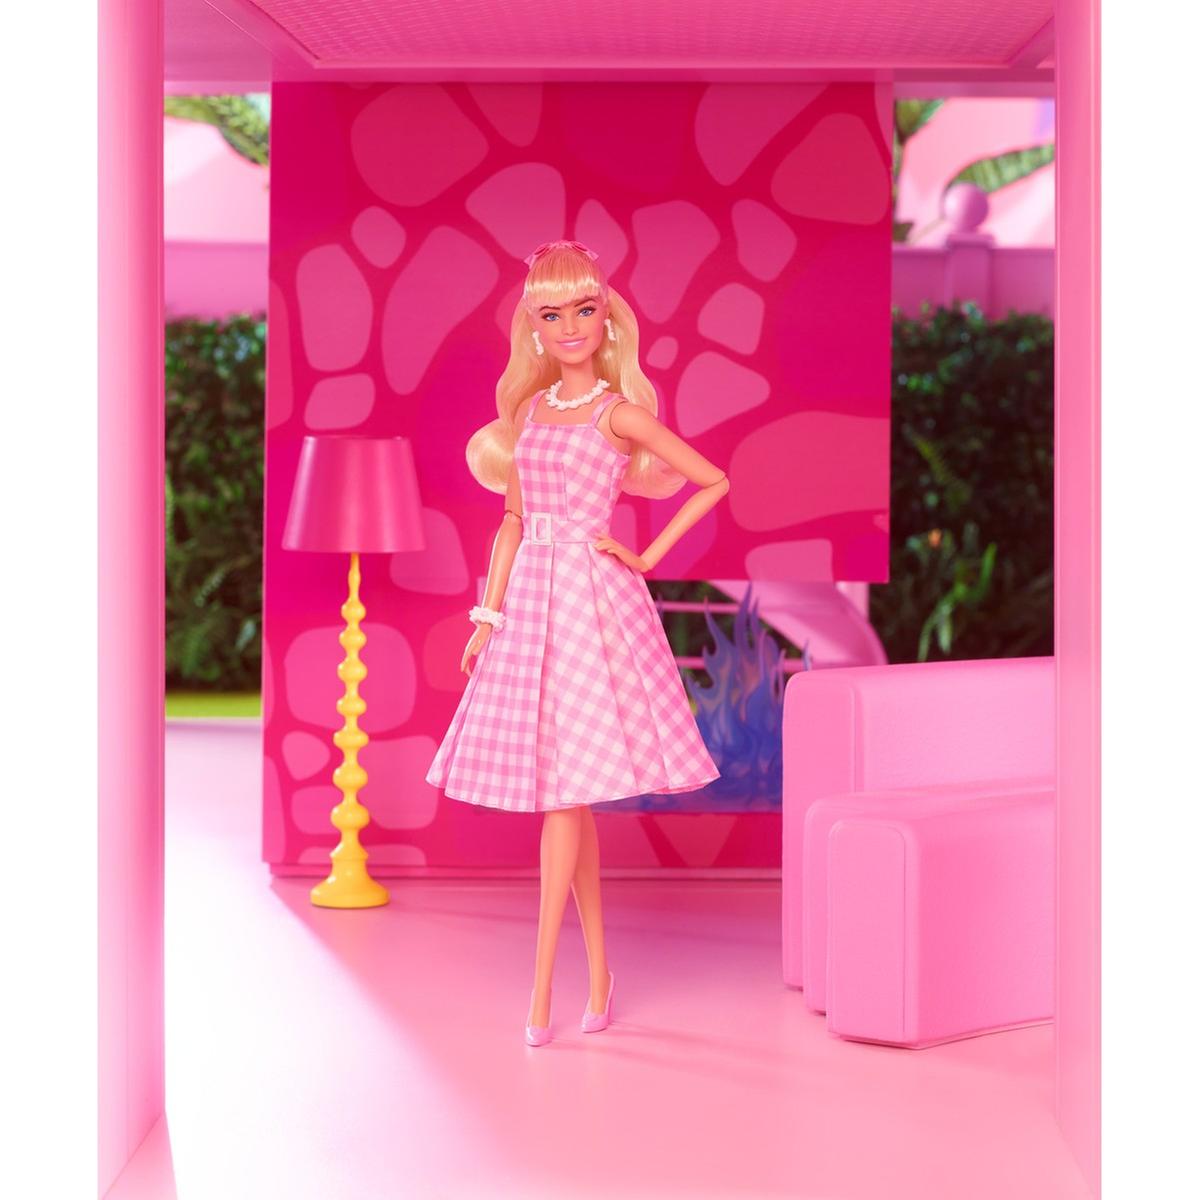 Barbie O Filme, Dia Perfeito, boneca de coleção Barbie Signature